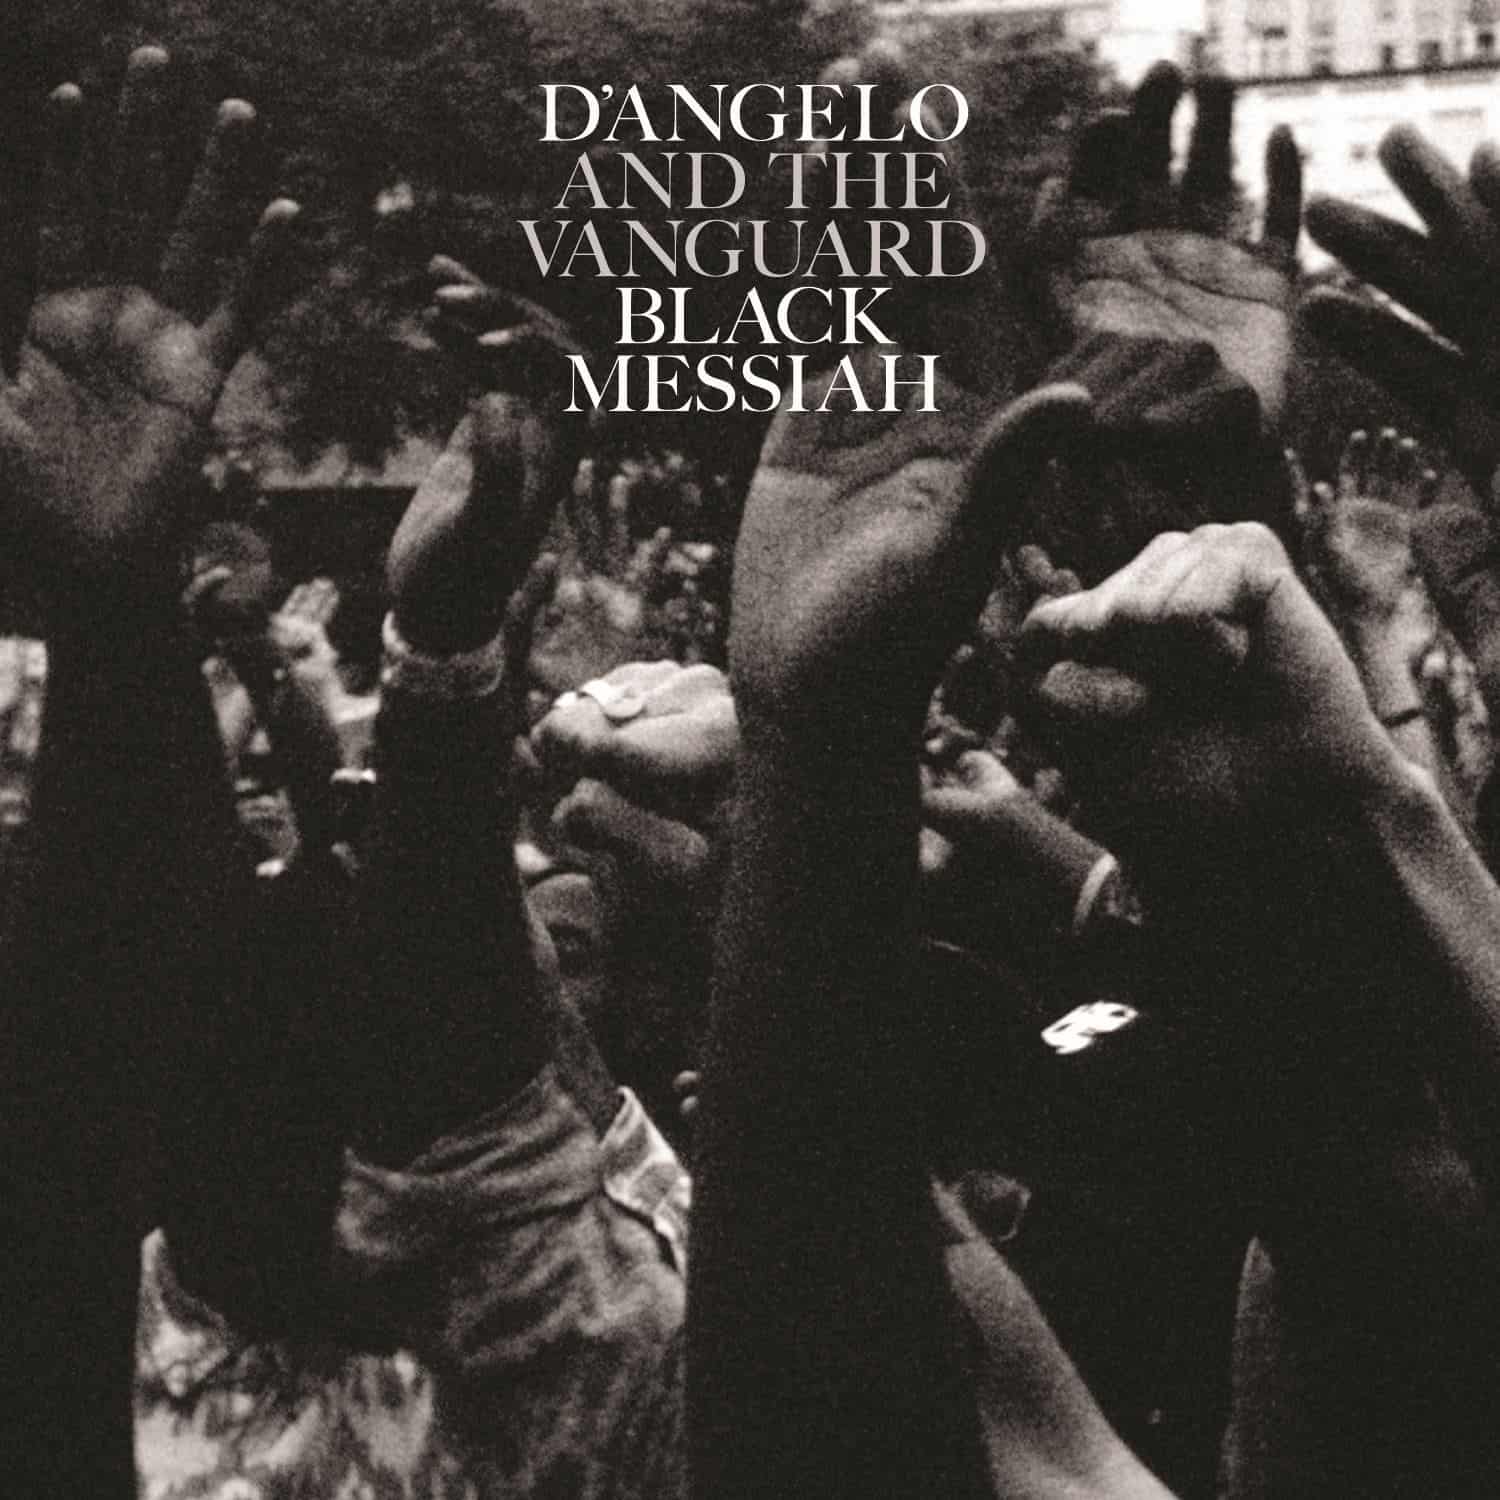 Zaskakujący powrót DAngelo i formacji The Vanguard z nową płytą - Black Messiah!